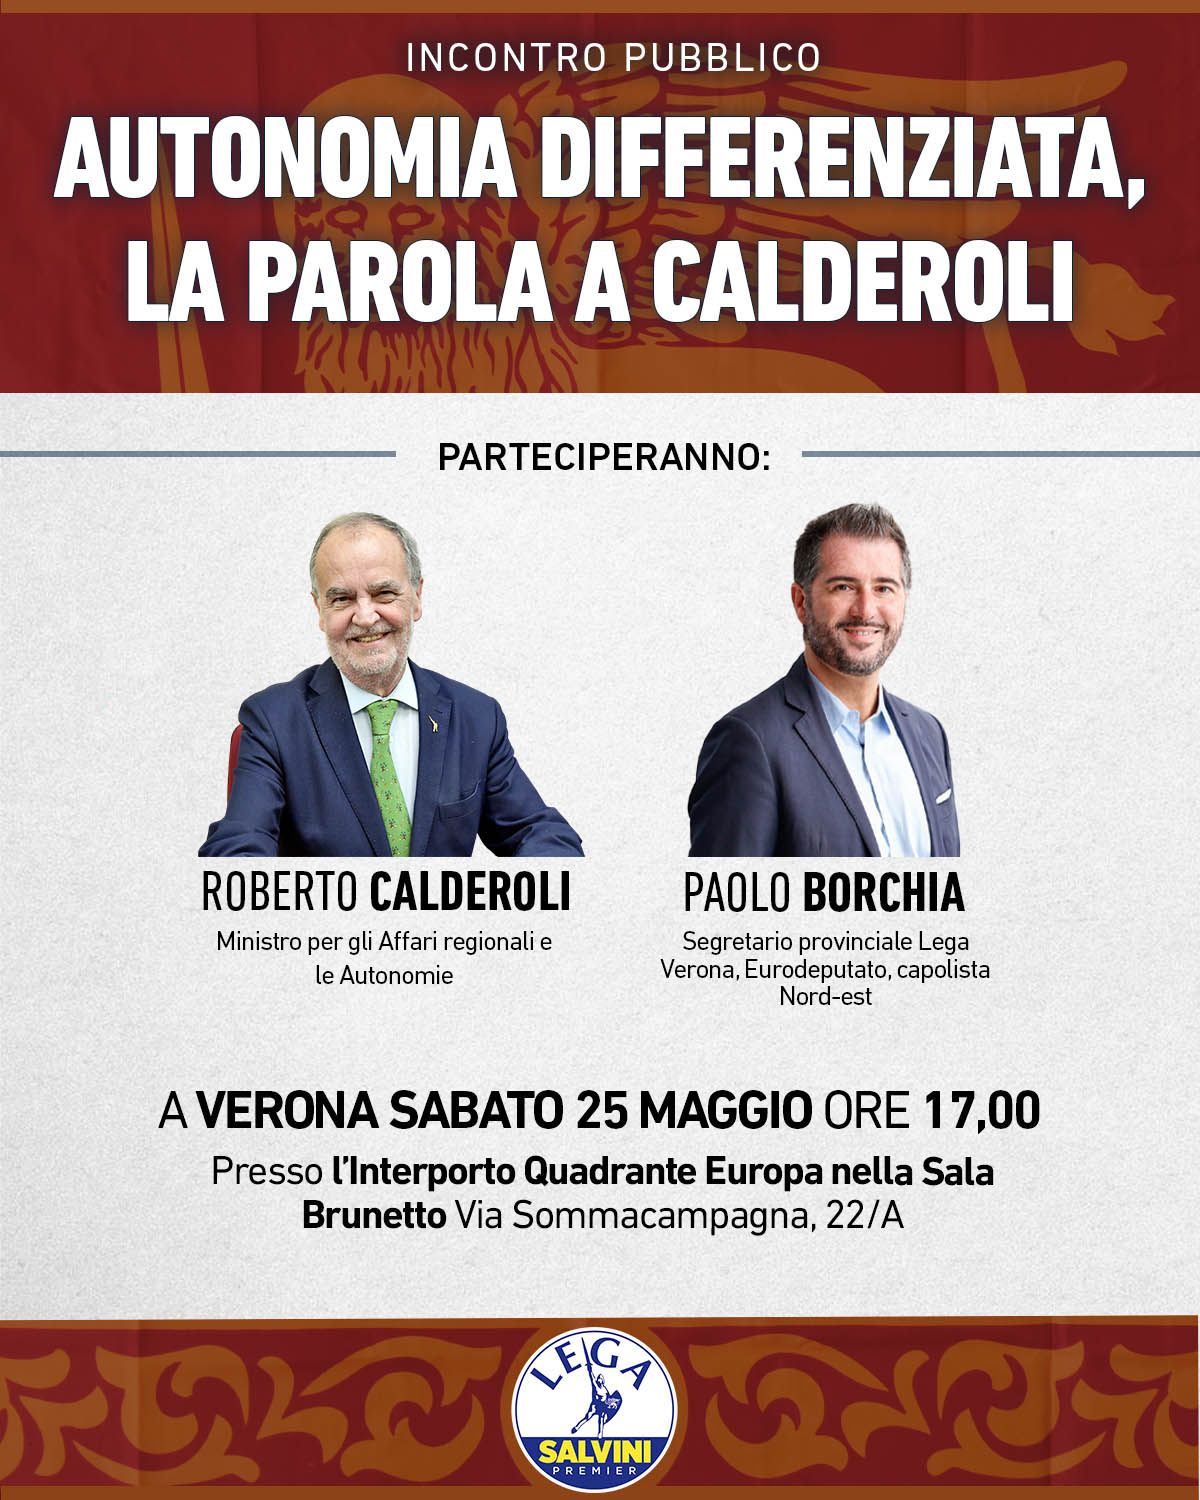 Roberto Calderoli con Paolo Borchia sabato a Verona: autonomia differenziata, a che punto siamo?